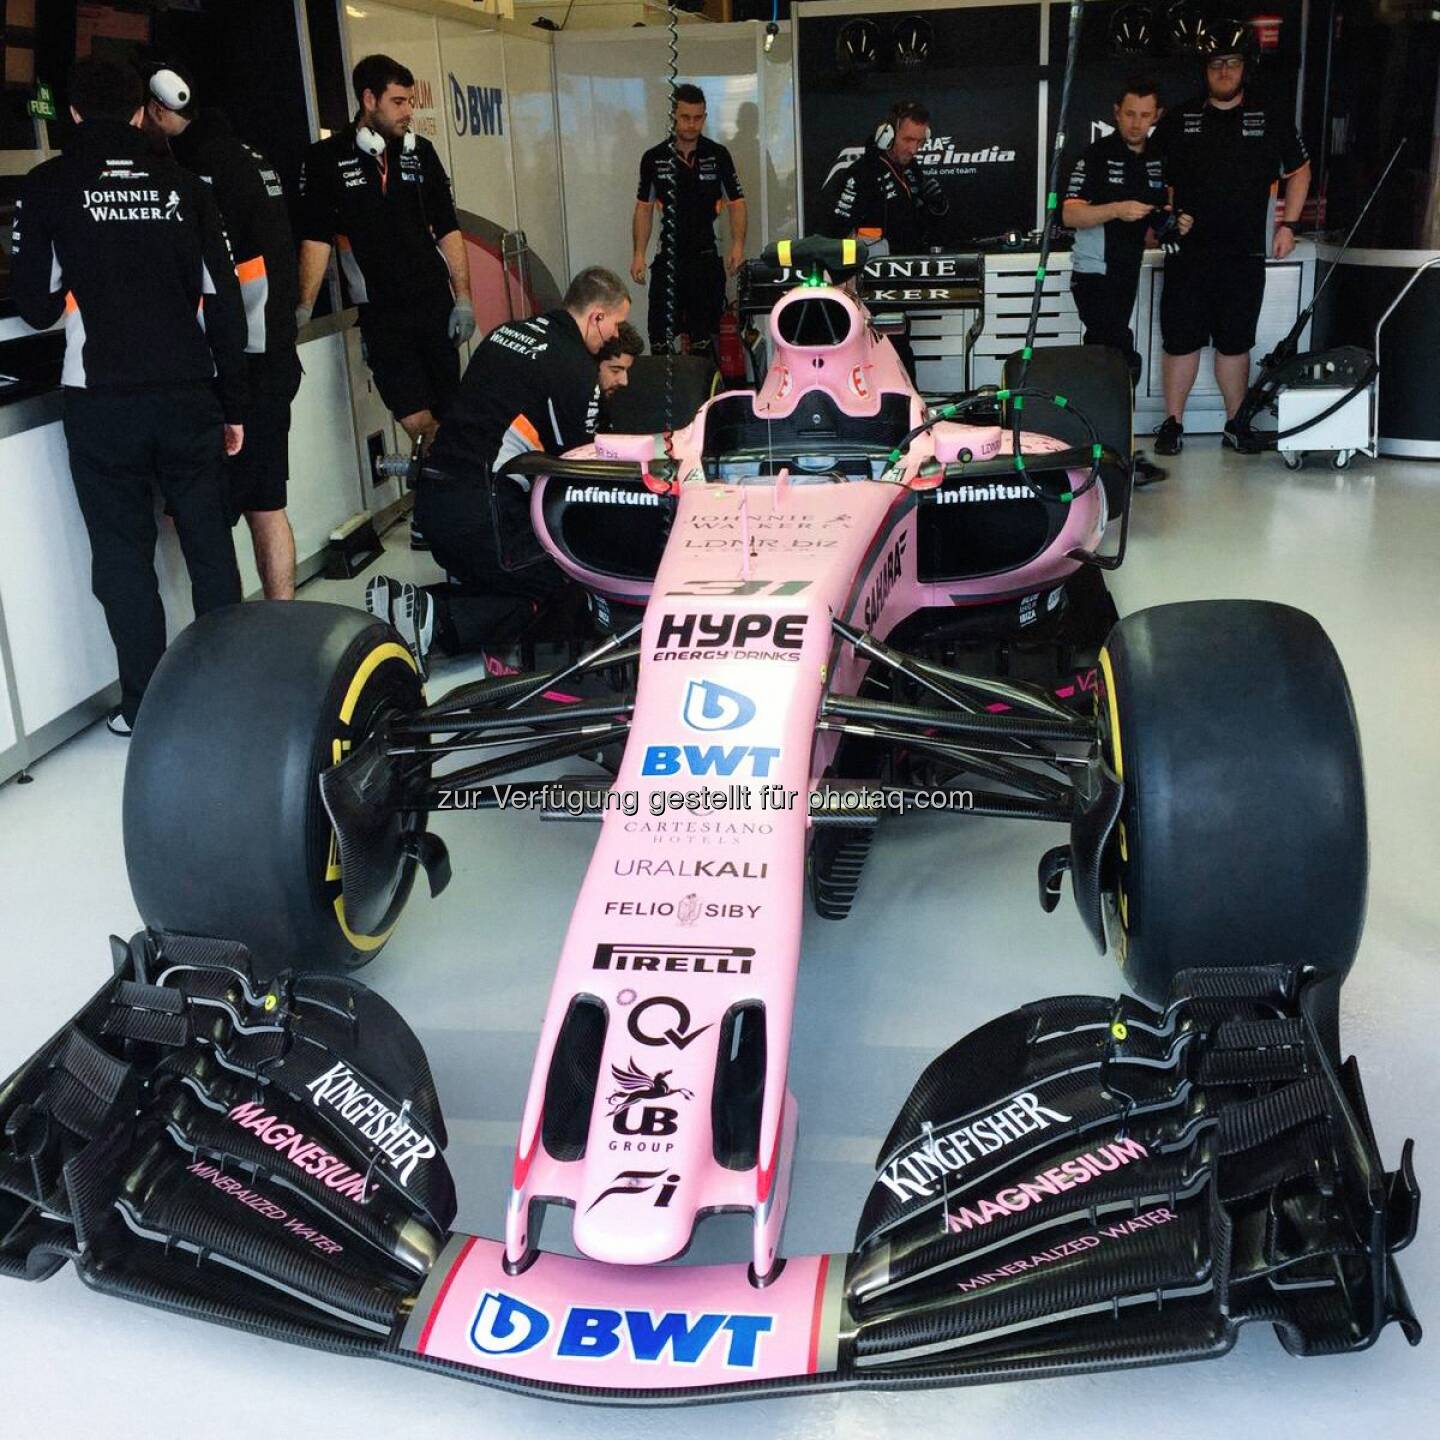 BWT - Die Pink Panther beim Sahara Force India Formula One Team sind bereit.
Viel Glück an Sergio Perez und Esteban Ocon. 
Let's rock the season 2017. 
#PinkInThePitlane #PinkPanther  Source: http://facebook.com/bwtwasser